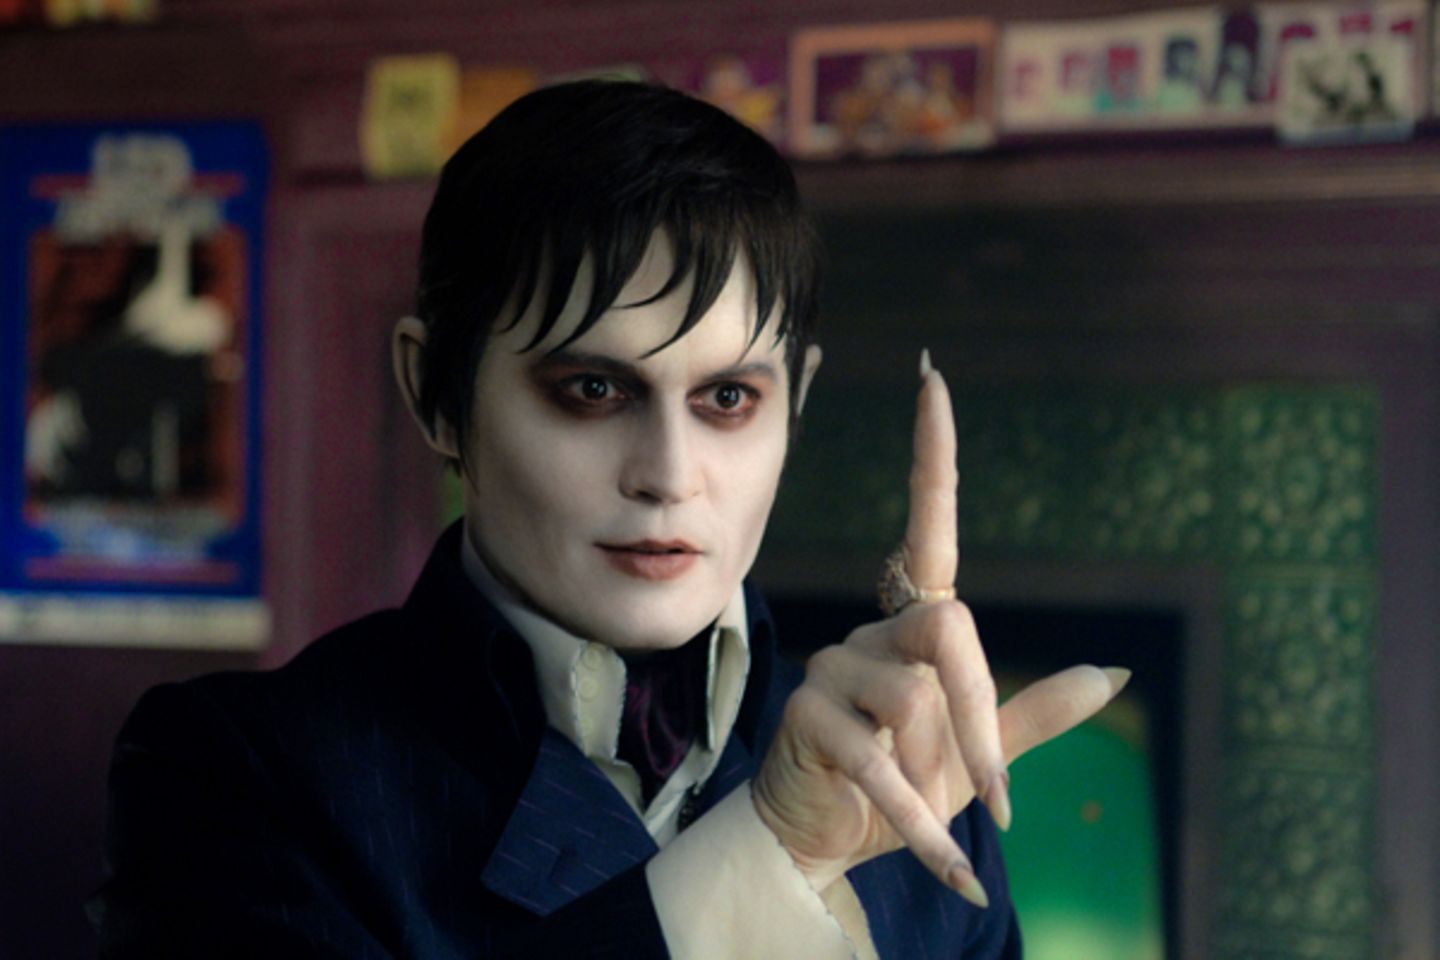 Johnny Depp in "Dark Shadows": Wenn Tim Burton eine Gruselkomödie dreht, dann spielt Johnny Depp die Hauptrolle. Als der Vampir